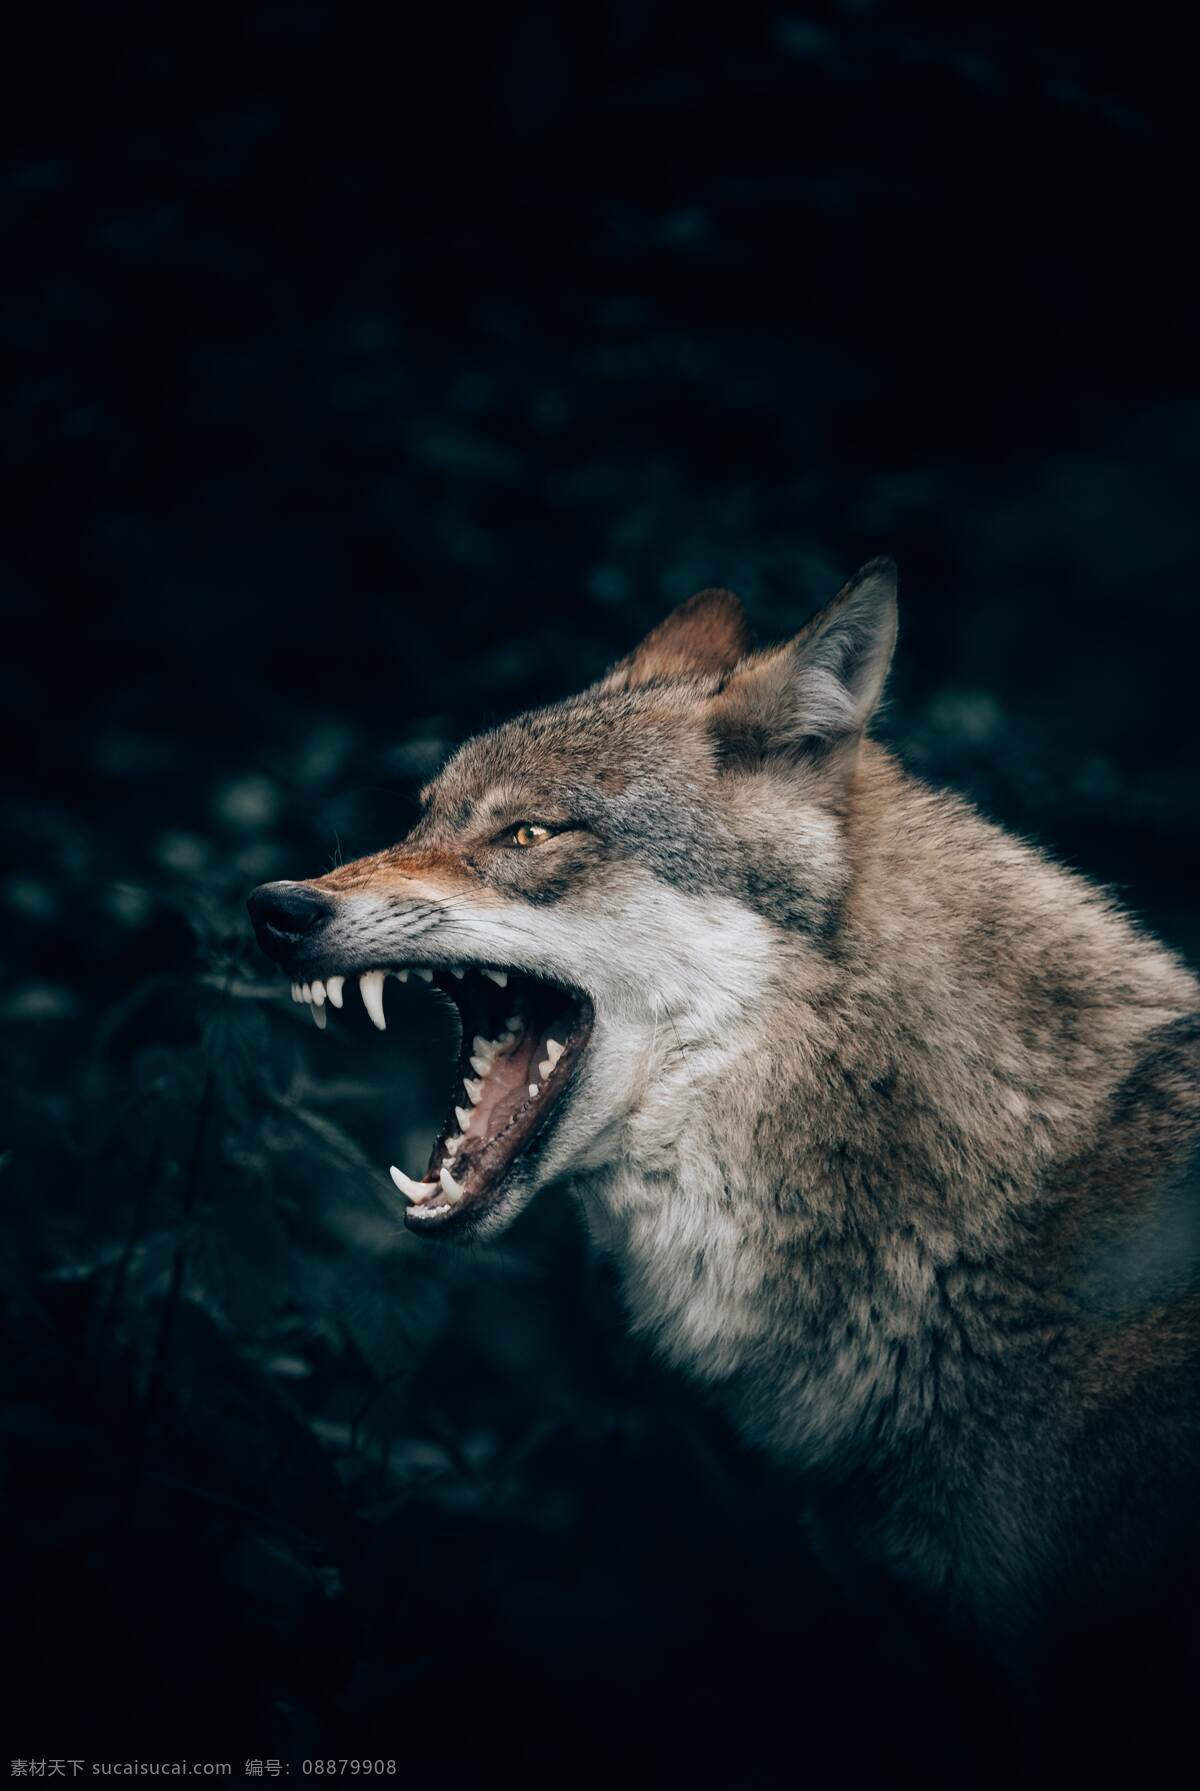 野狼 狼 狼性团队 野性 野生动物 动物 丛林之王 嚎叫 狼嚎 黑色背景 可爱动物 生物世界